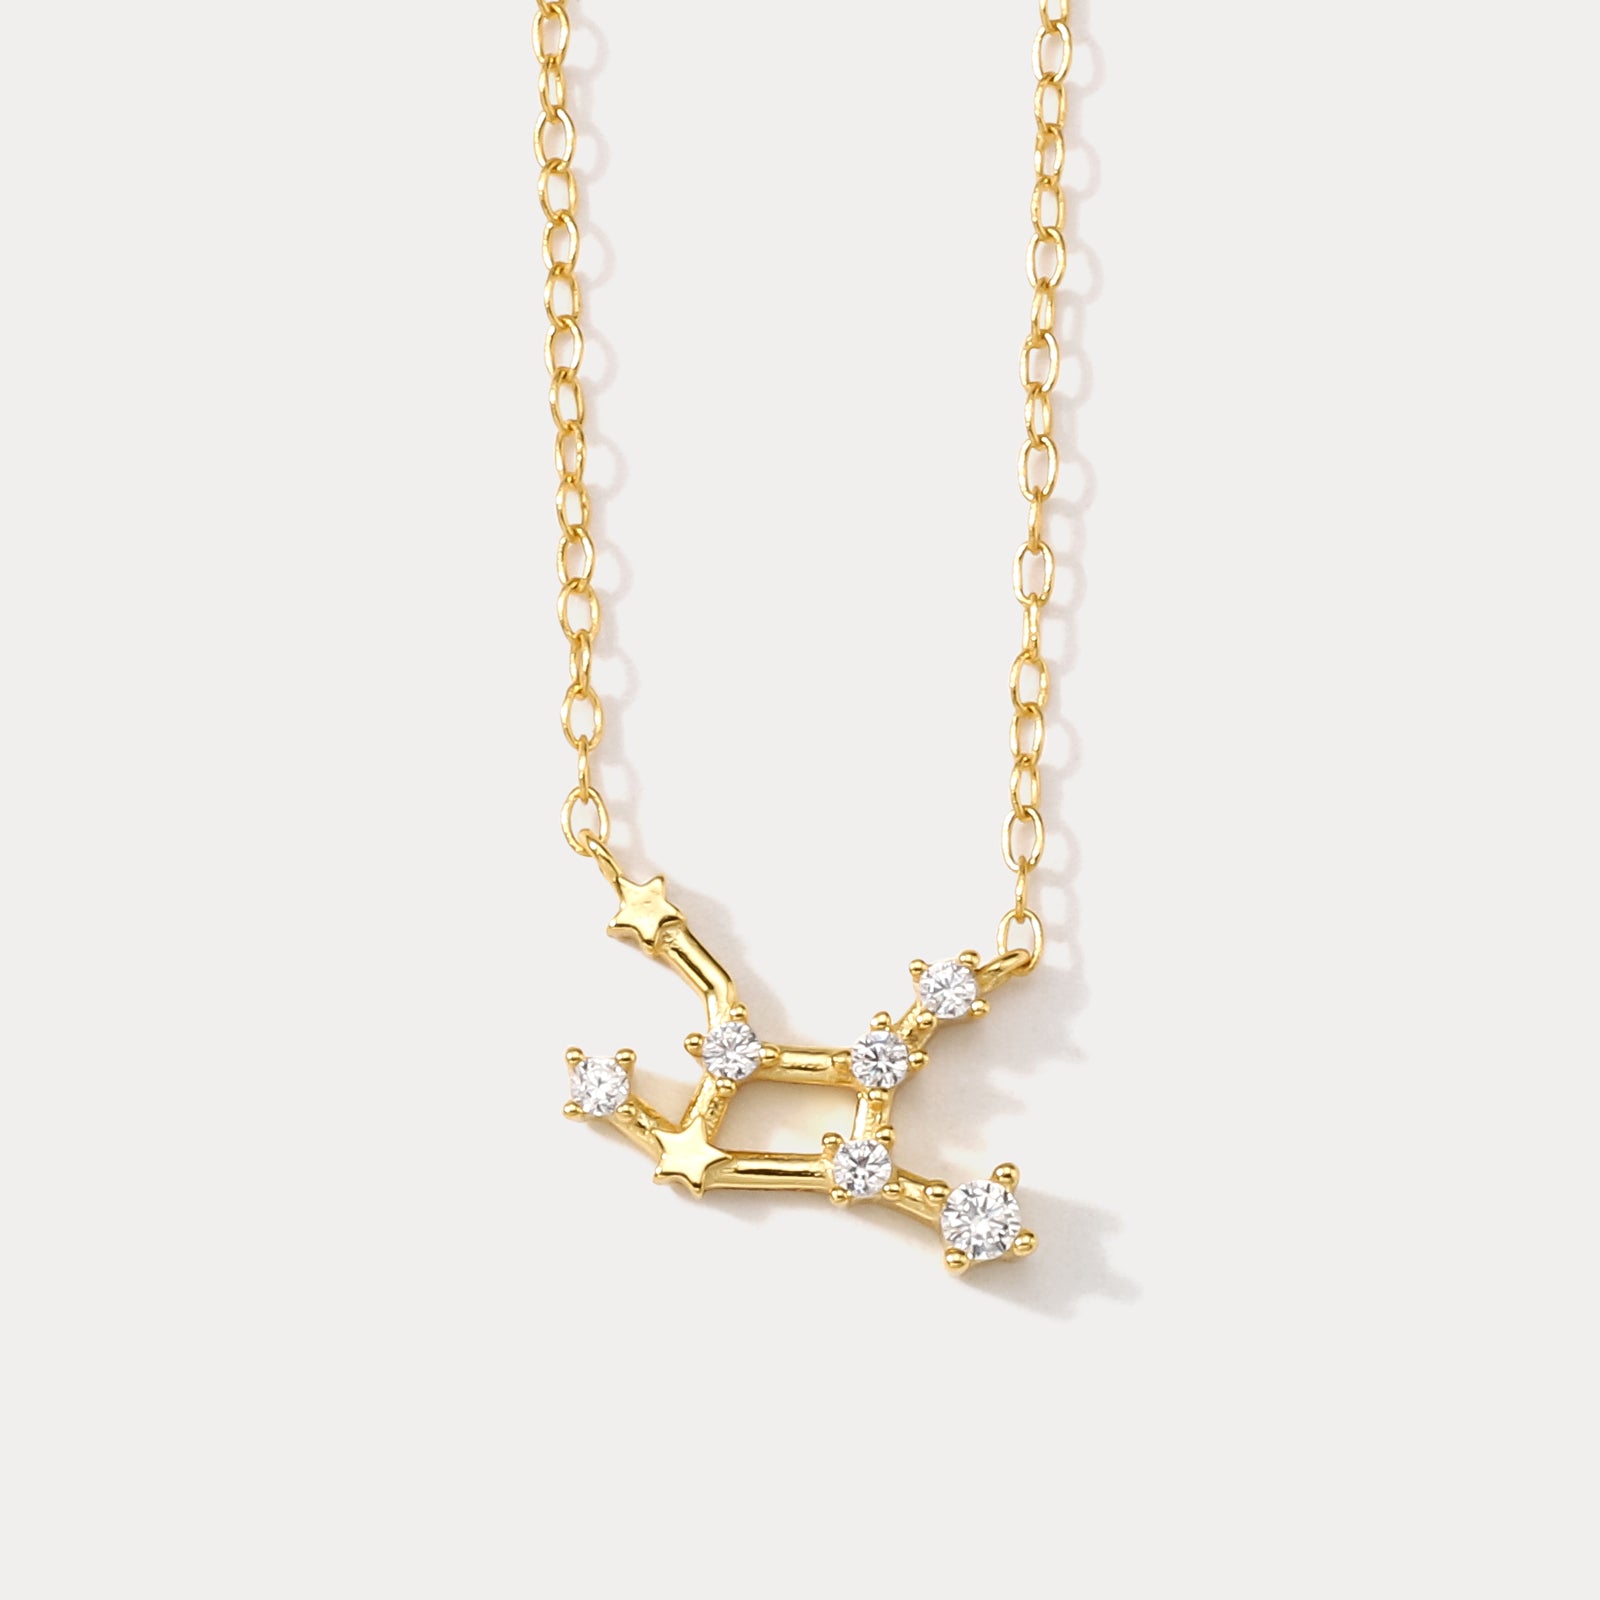 Constellation Silver Necklace-Virgo